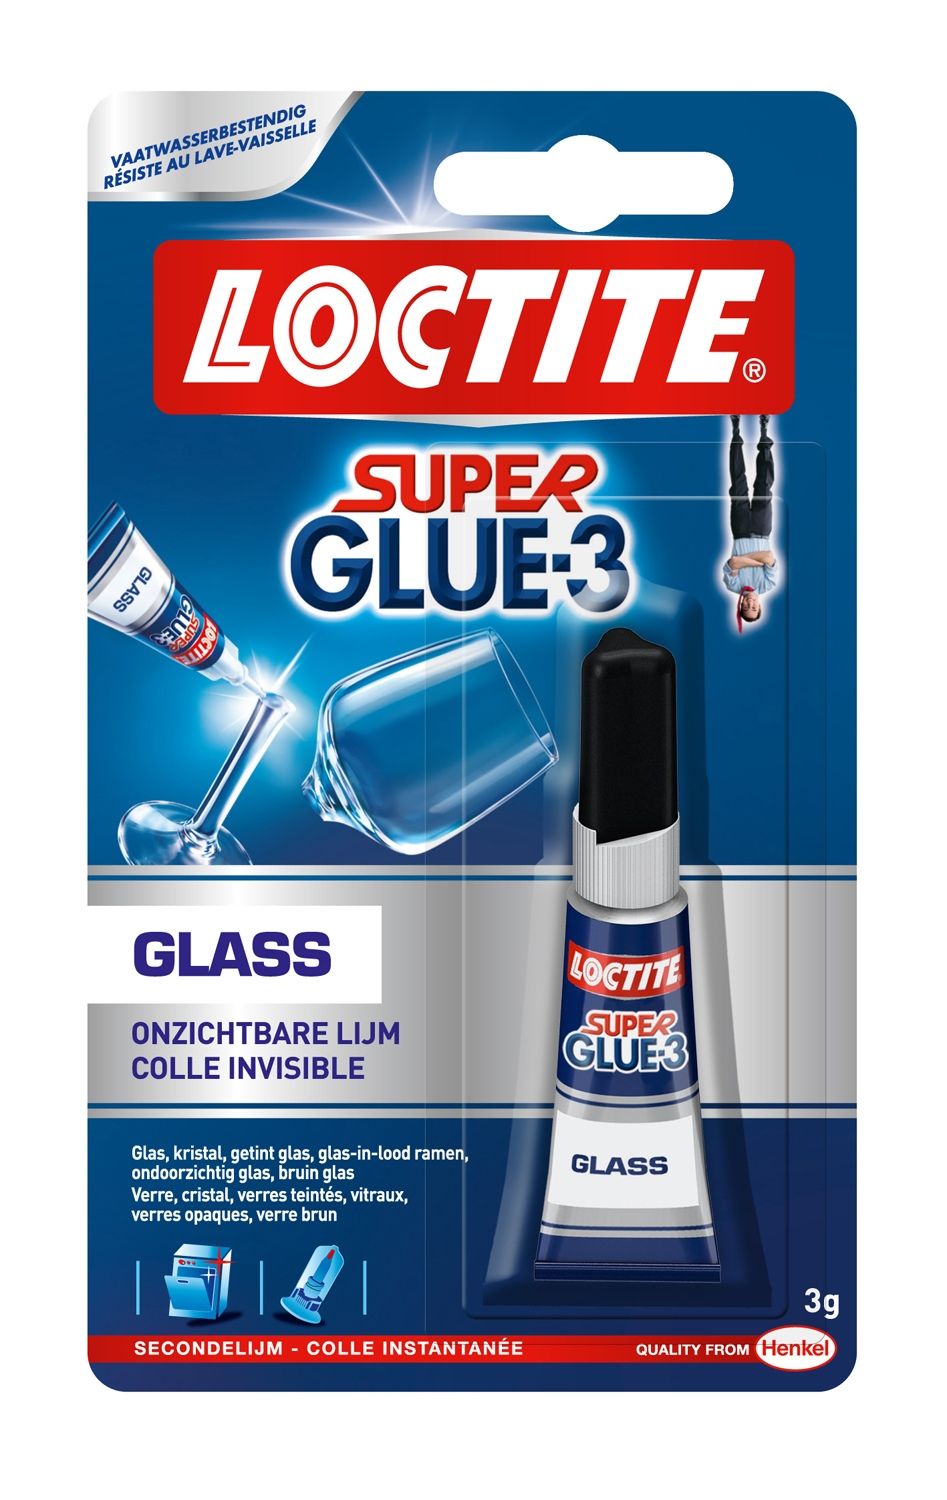 Les produits   Colle et adhésif - Colle Super glue 3 Universal  liquide tube 3g LOCTITE